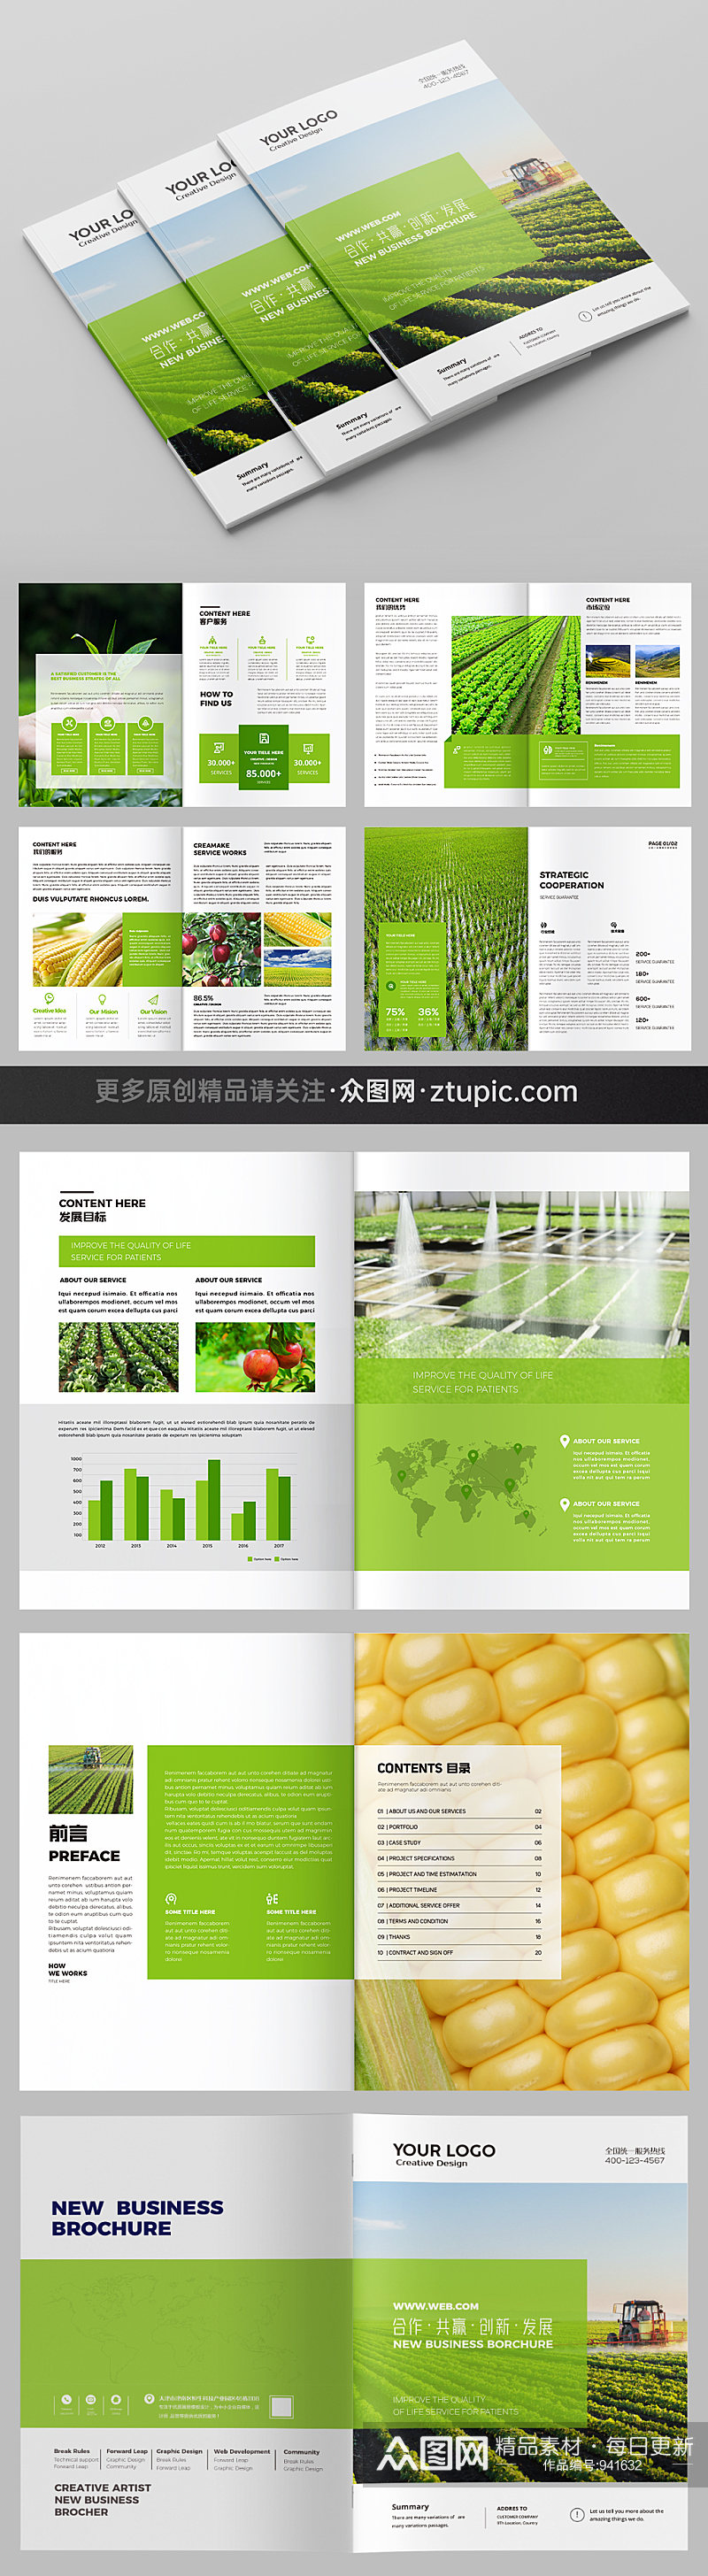 绿色农产品画册农业画册素材